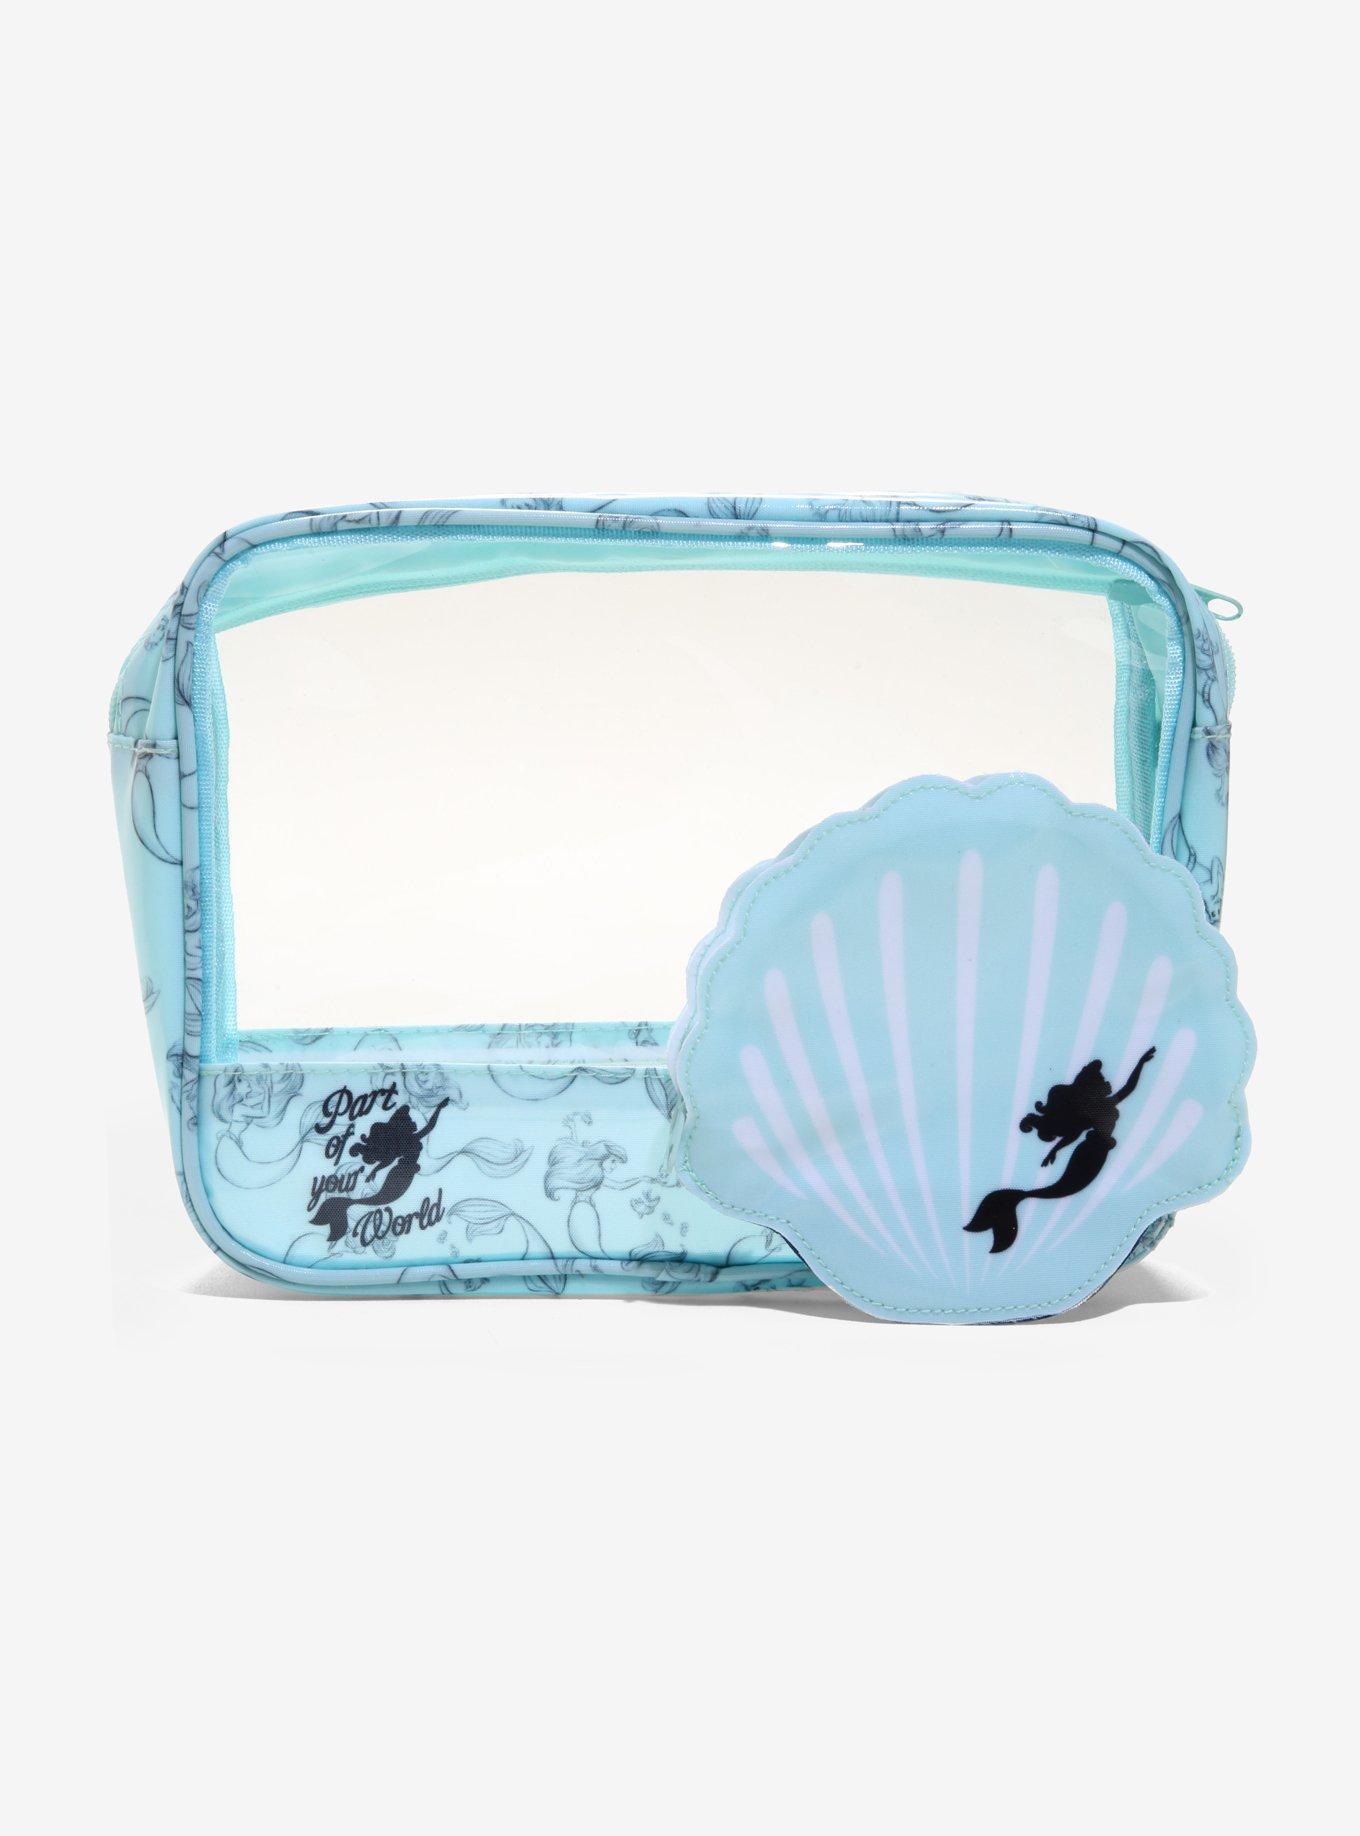 Disney The Little Mermaid Ariel Shell Makeup Bag Set, , hi-res